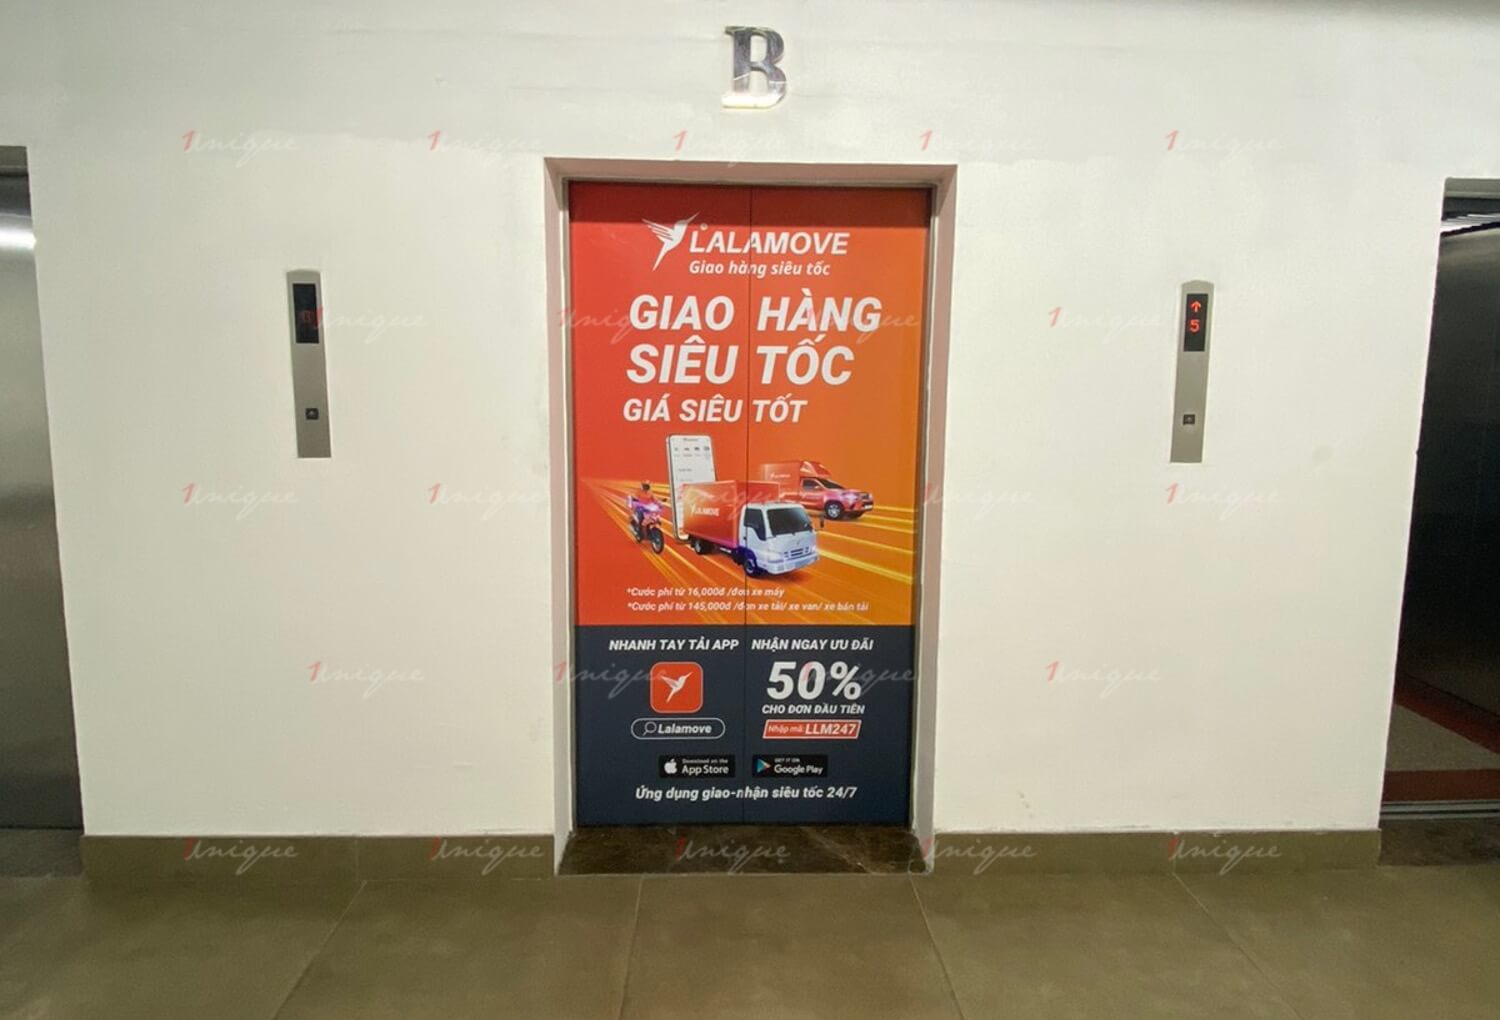 Chiến dịch quảng cáo dán thang máy của Lalamove